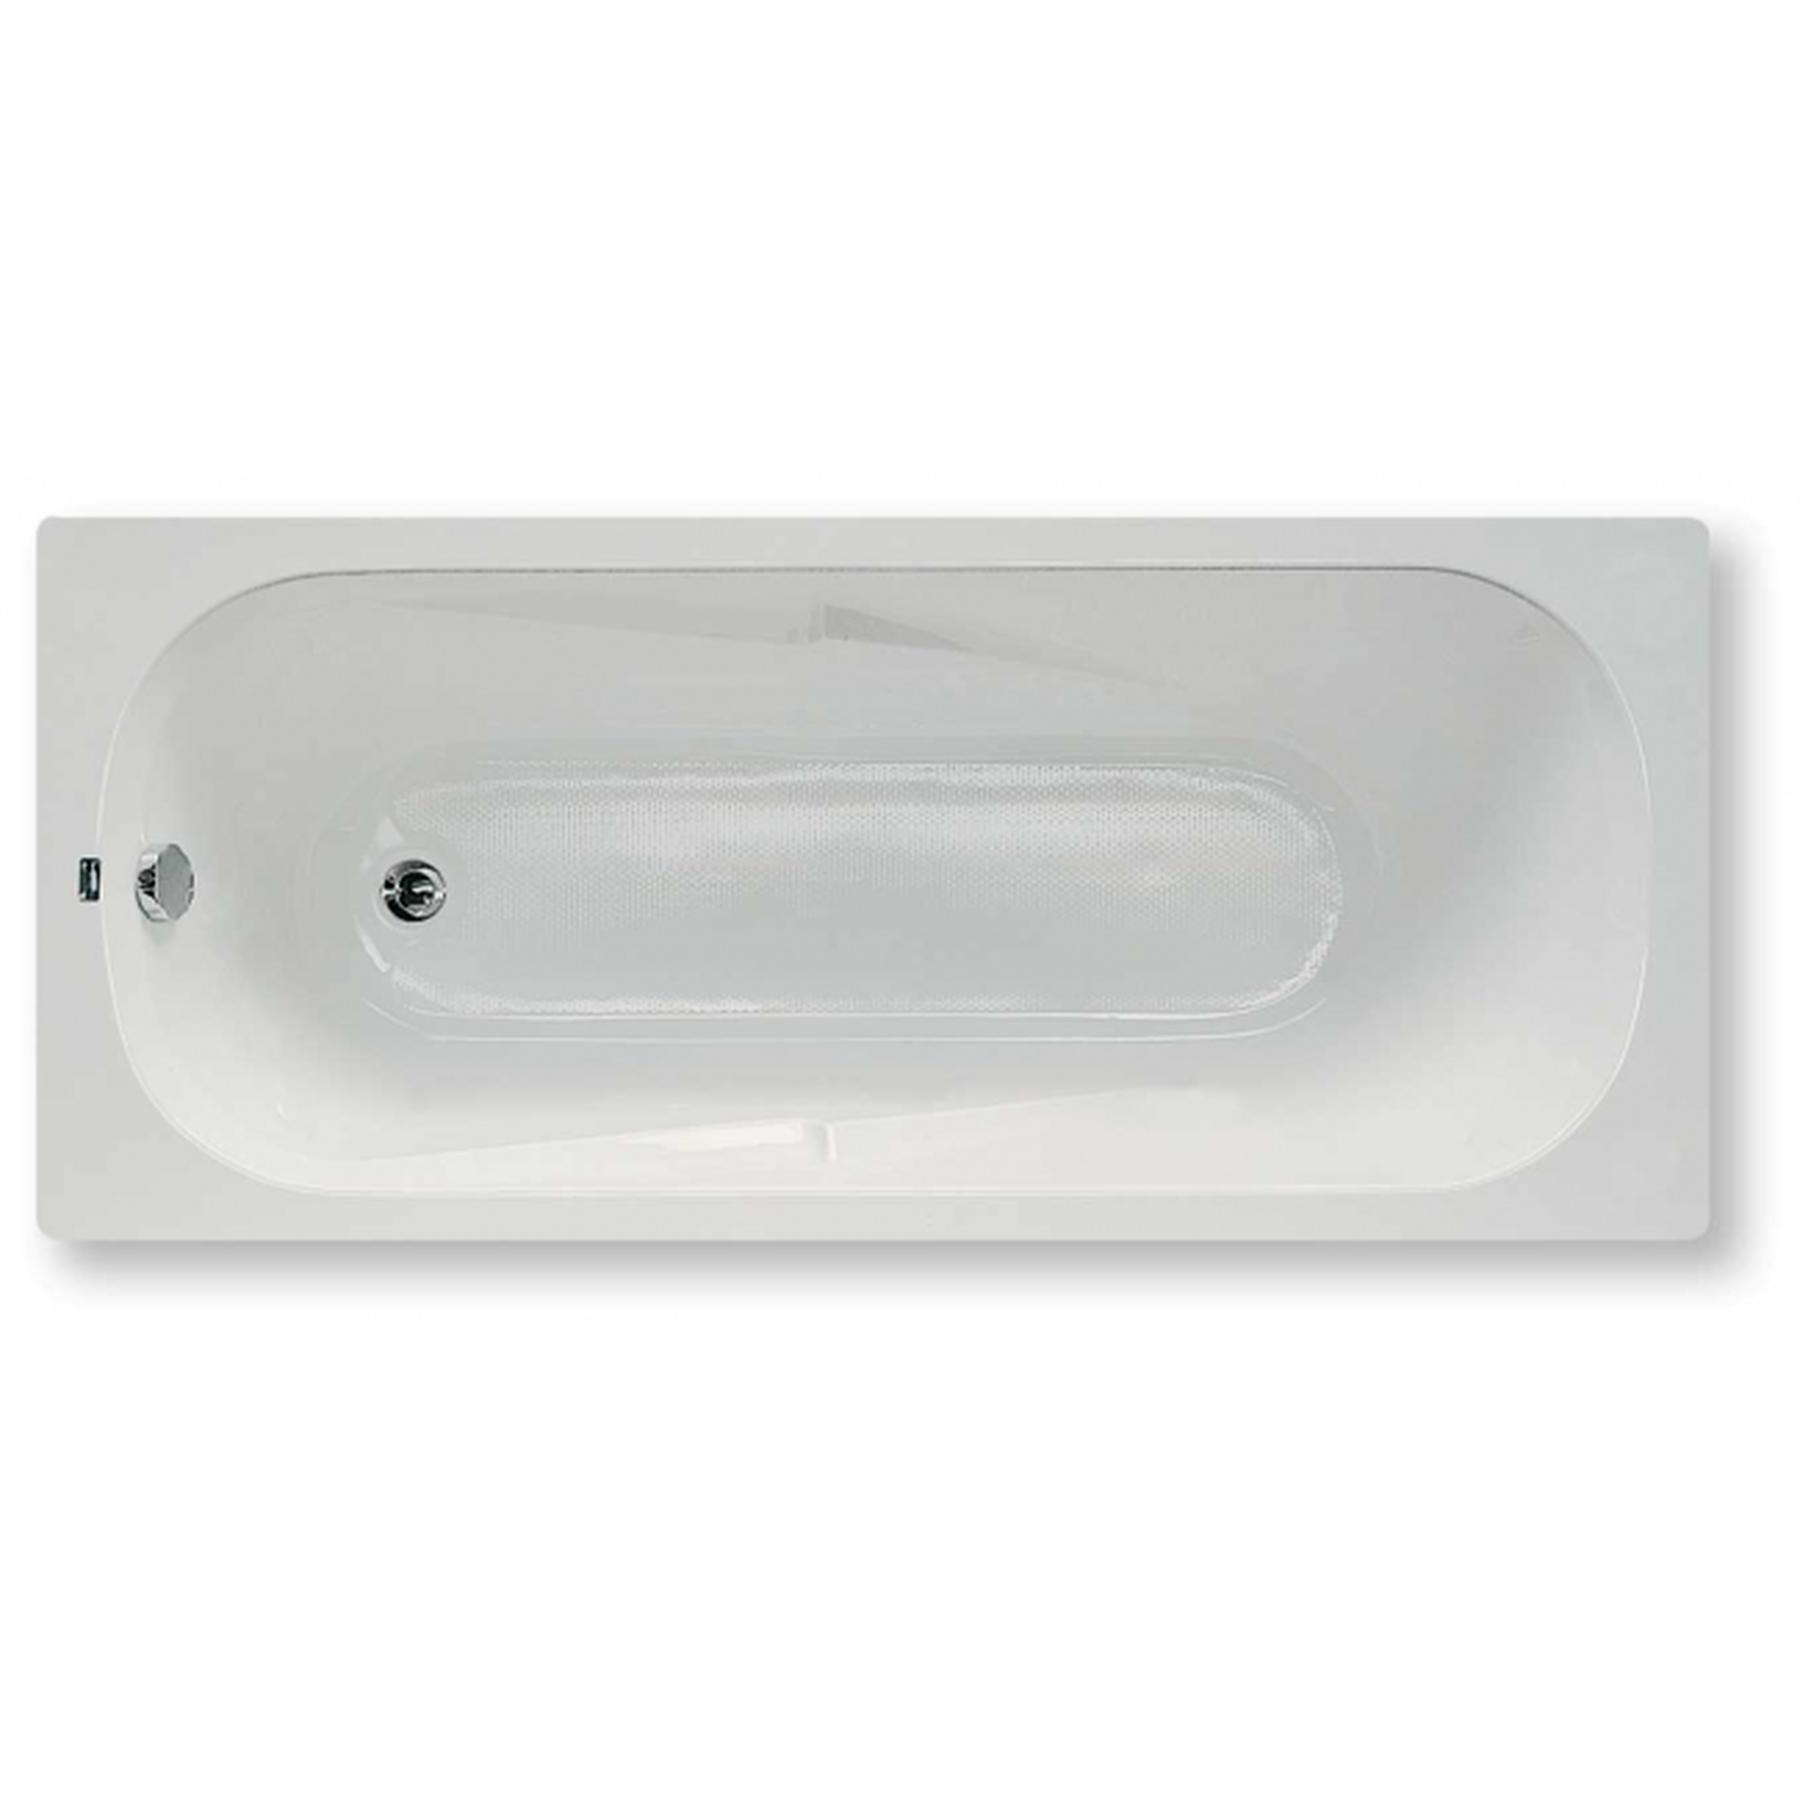 Baignoire acrylique Haute Densité Gamme PRO SANINDUSA Eva 150x70 couleur blanc avec réducteur de glisse vidage non inclus